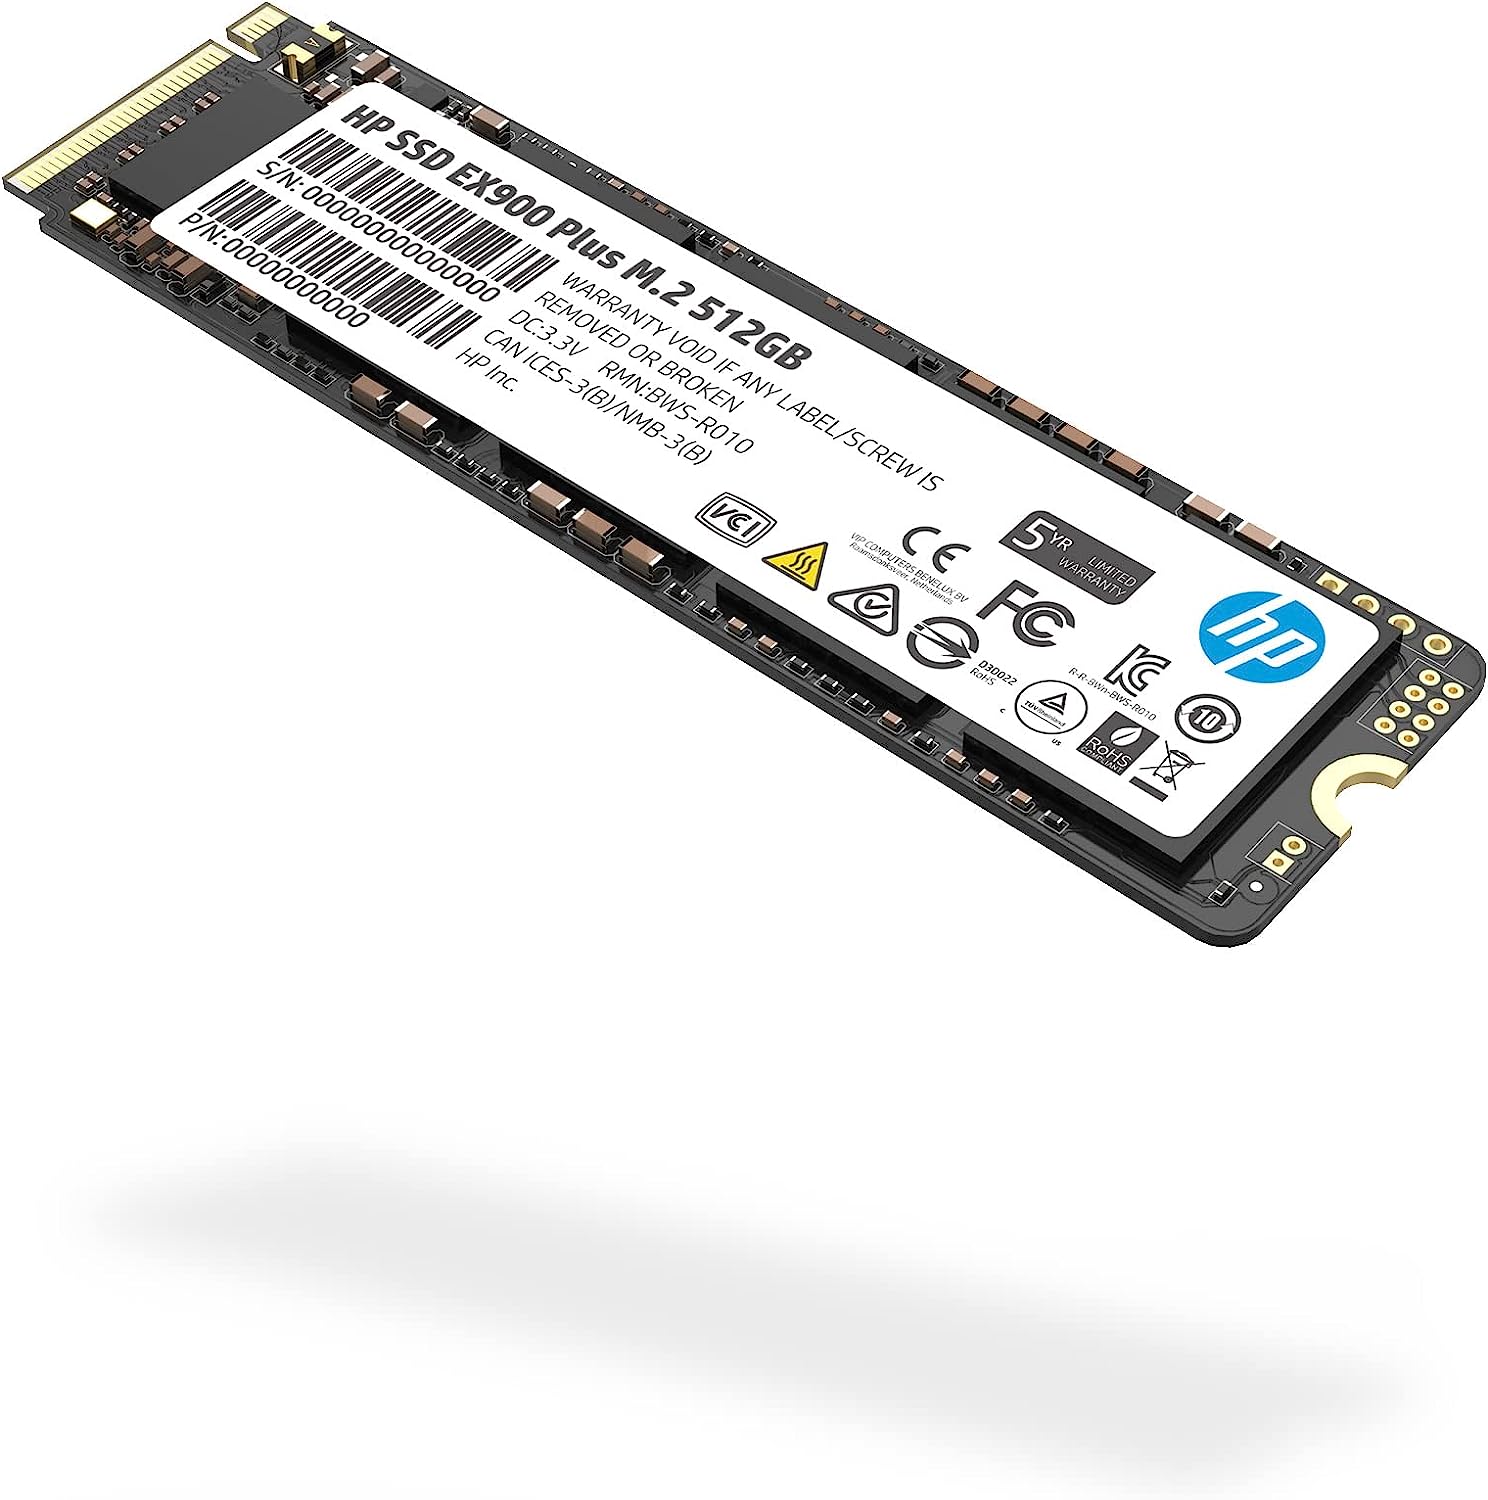 Ổ cứng SSD hiệu HP Model EX900 Plus M.2 NVMe 512GB - Hàng Chính Hãng